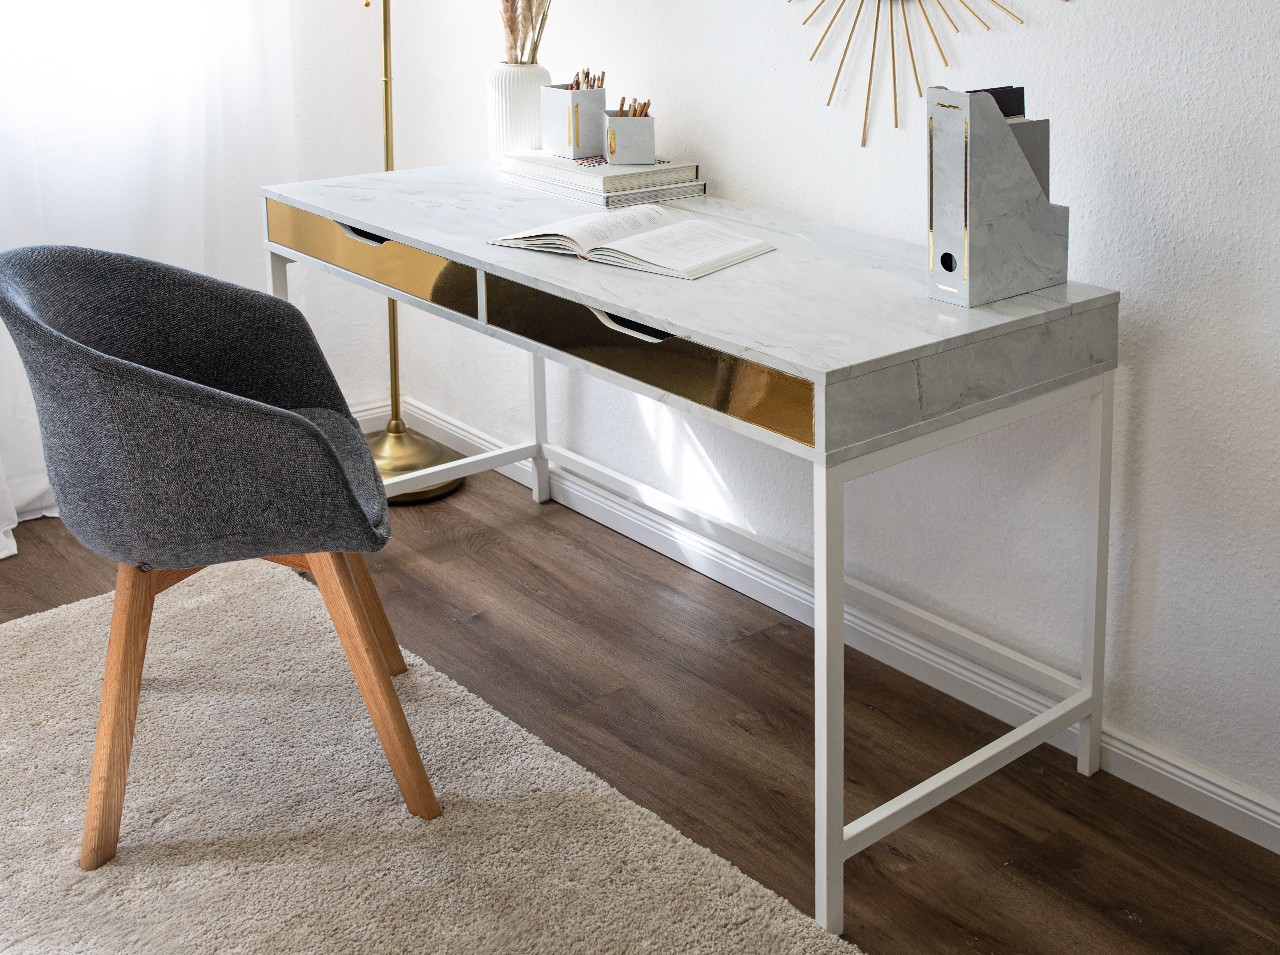 Schreibtisch mit Tischfläche, die mit Klebefolie in weißer Marmoroptik neu beklebt und gestaltet wurde.